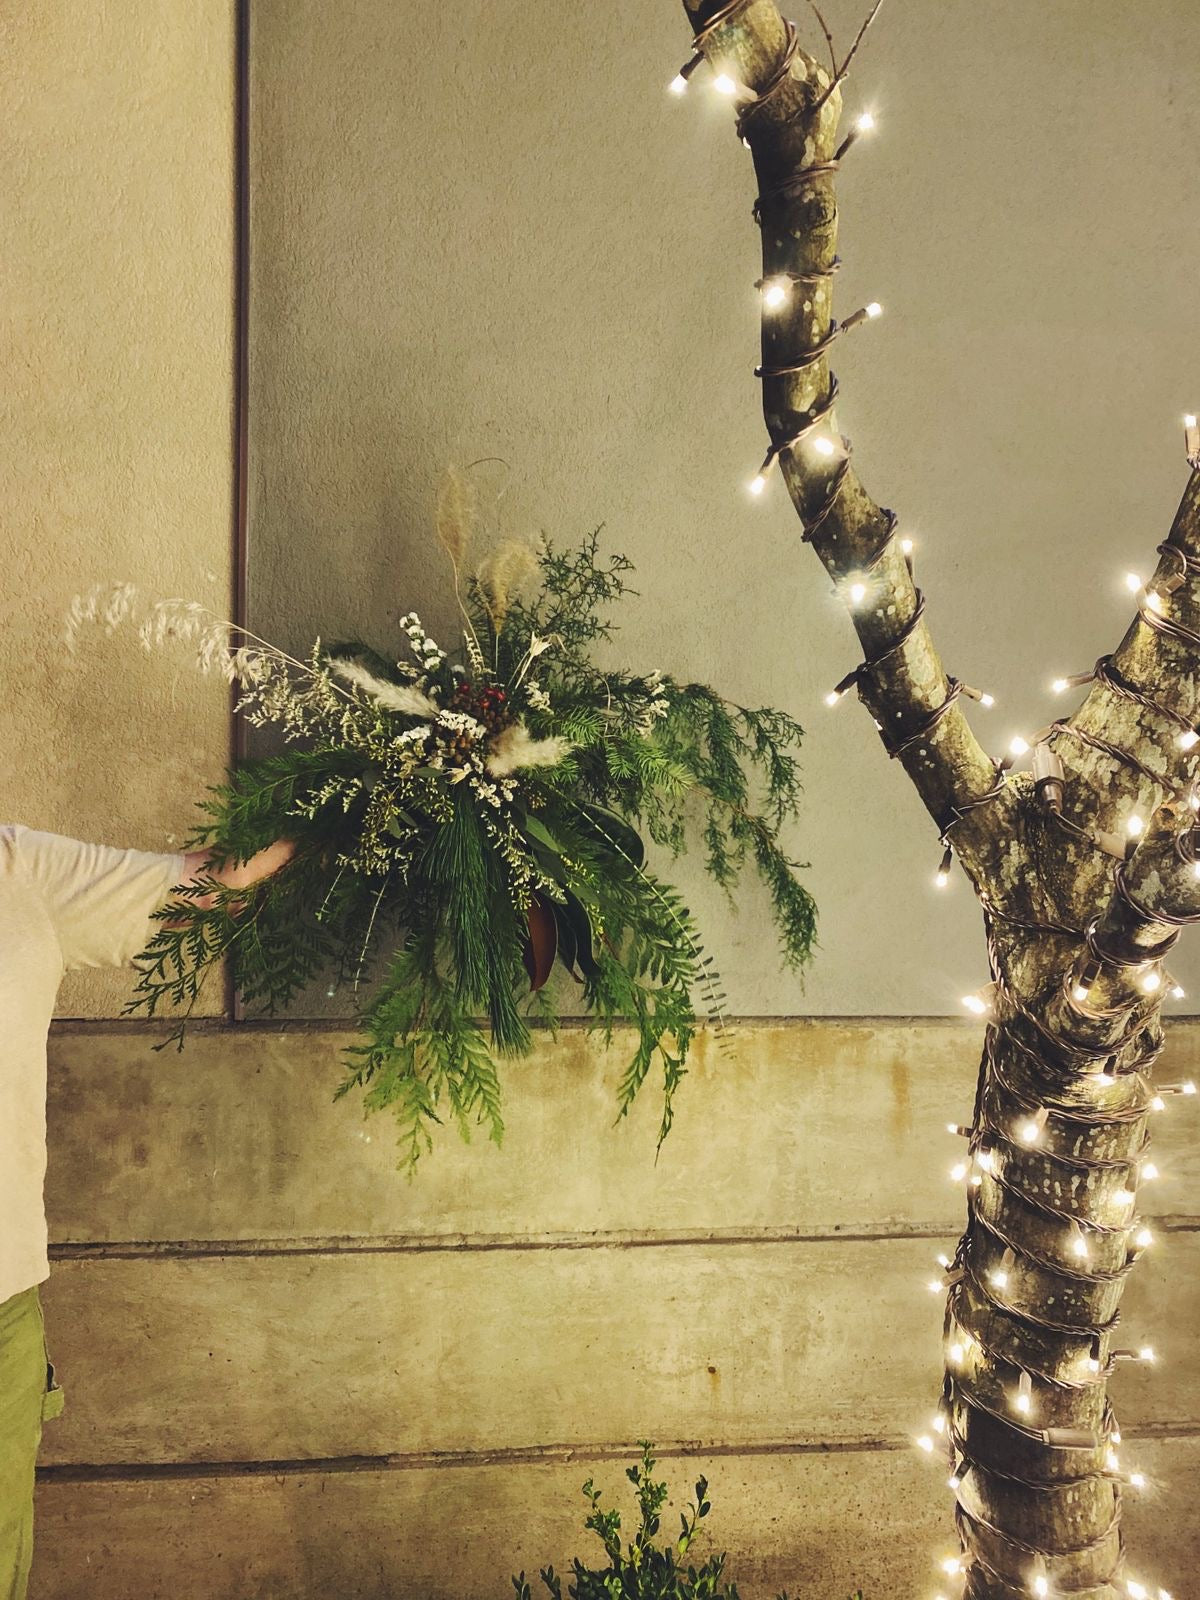 Workshop: Winter Wreaths & Hangings (December 9)